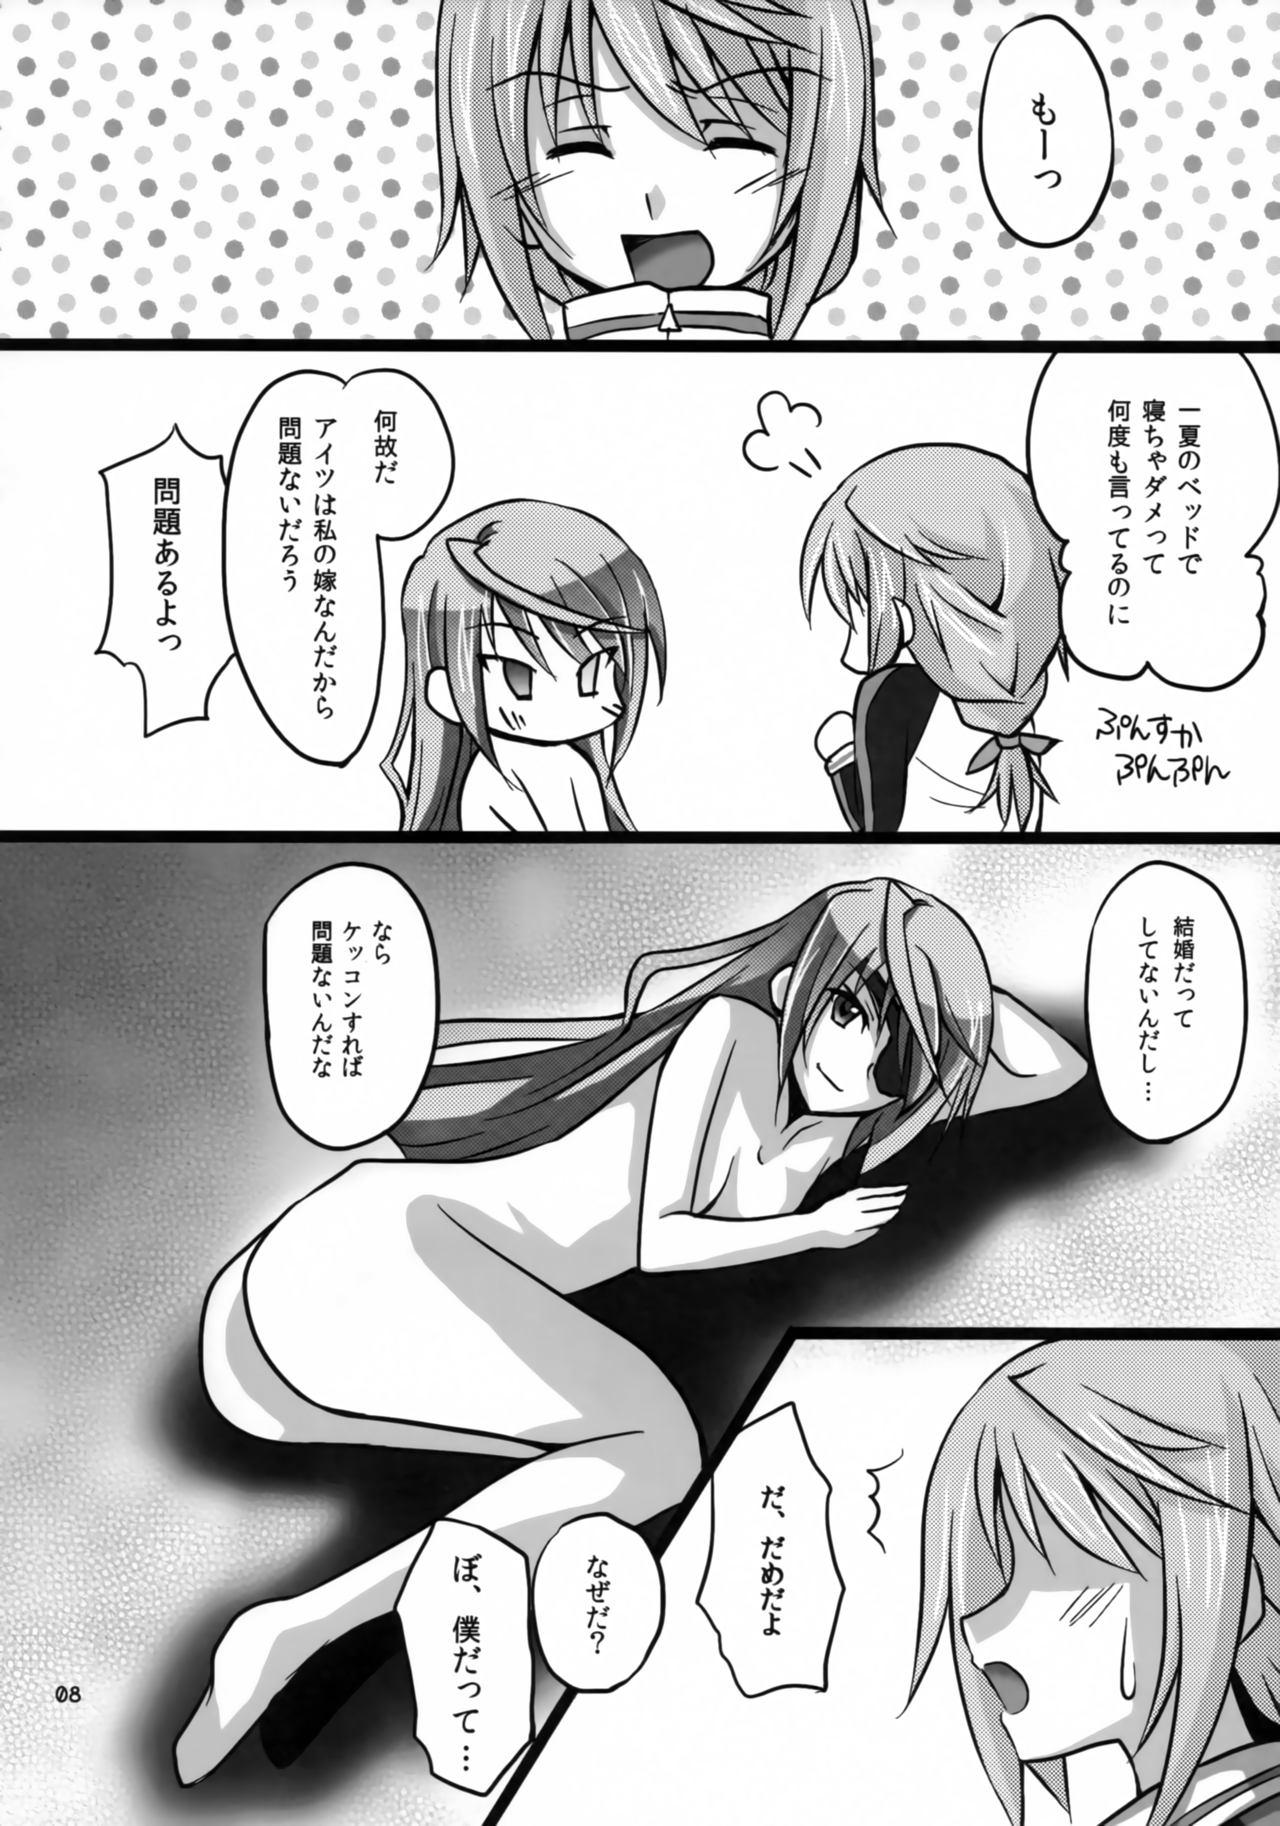 Huge Cock Ichika to Sex Shitai - Infinite stratos Verga - Page 7